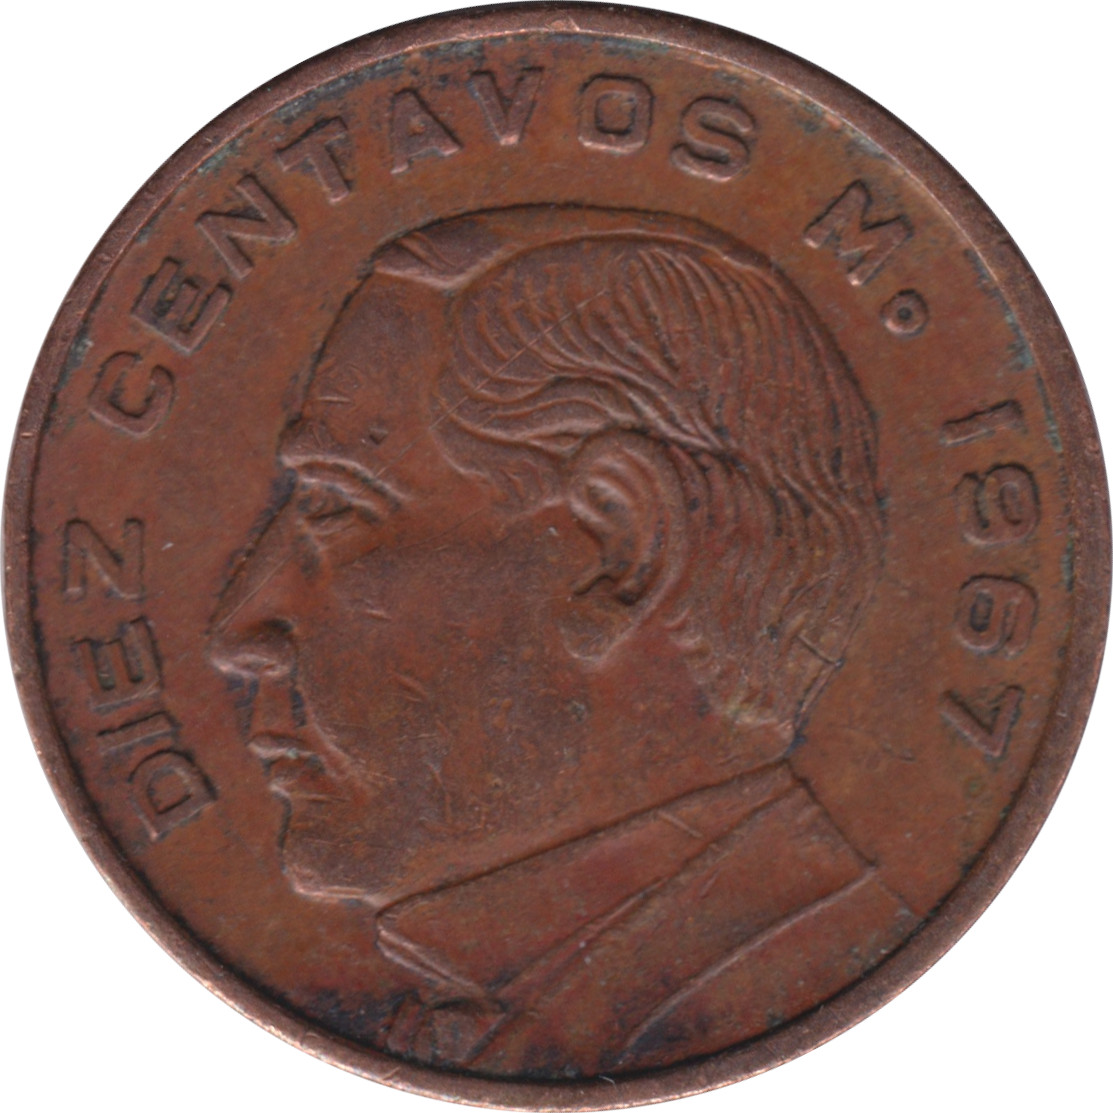 10 centavos - Hidalgo